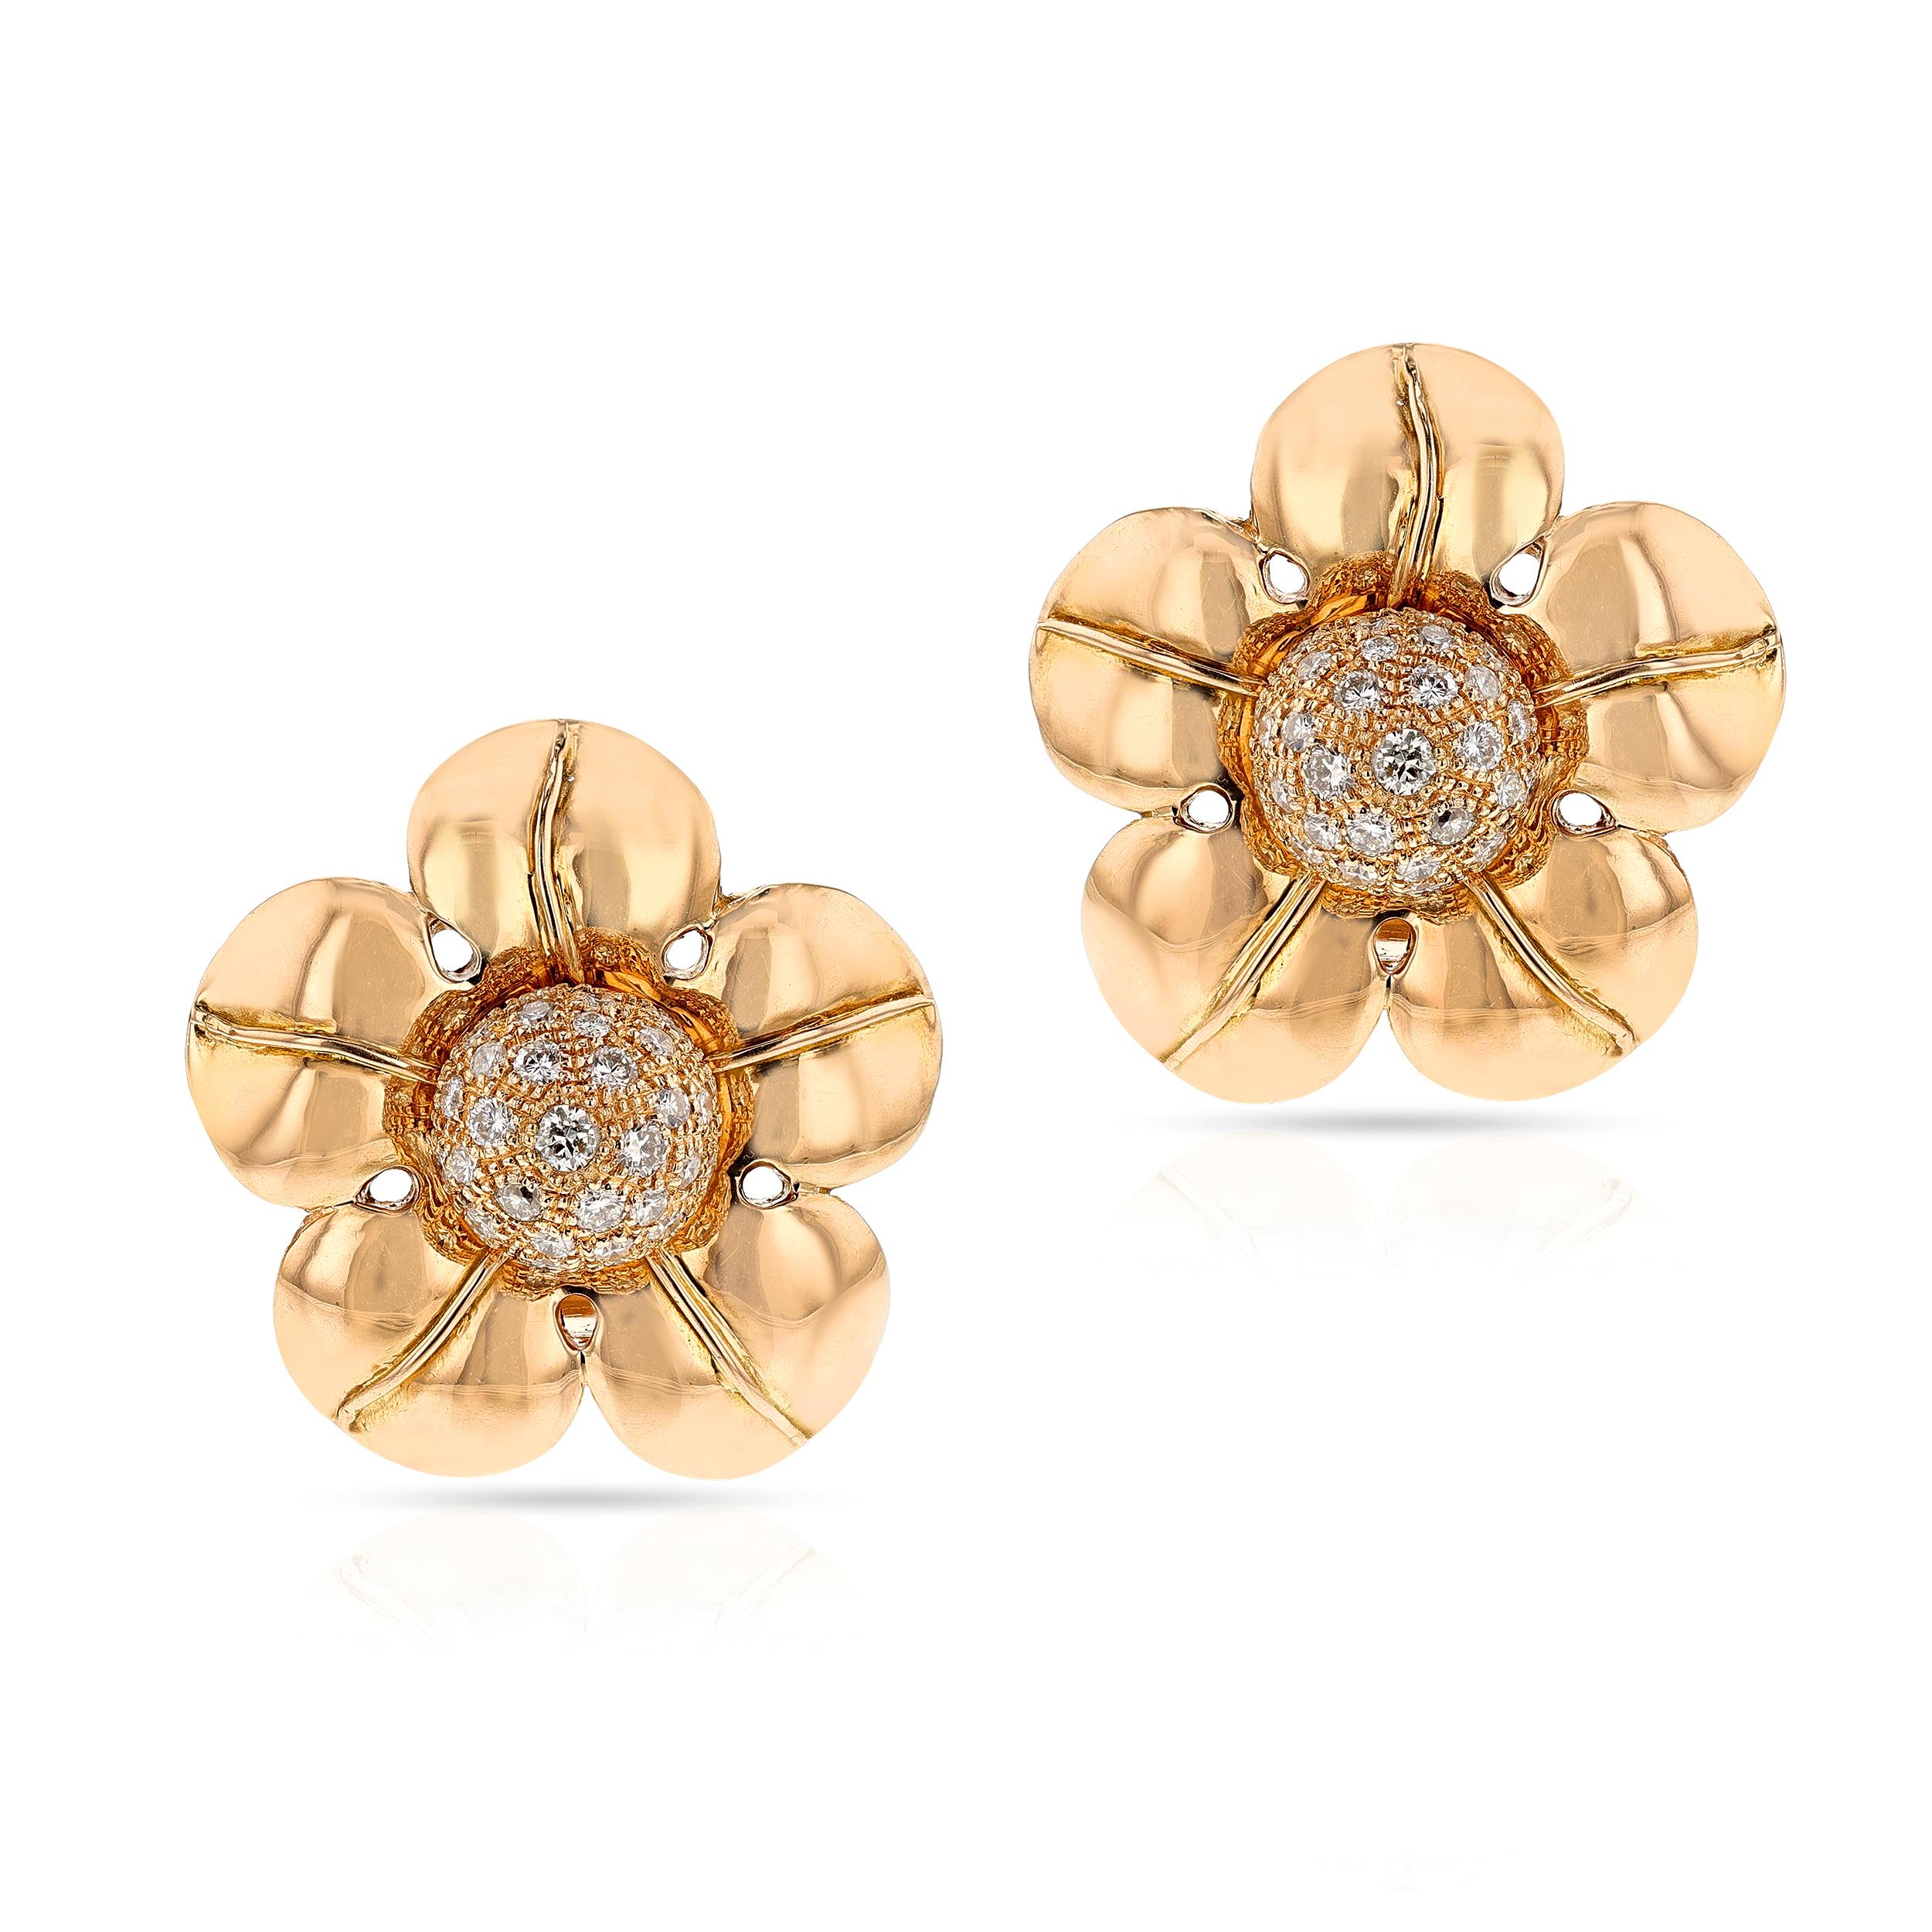 Rare paire de boucles d'oreilles Van Cleef & Arpels Floral réalisées par Pery et Fils Floral  avec or et diamants en 18k. Signés et numérotés. La longueur est de 1,25 pouces de diamètre avec environ 3 carats de diamants de couleur D-E-F, pureté VS,